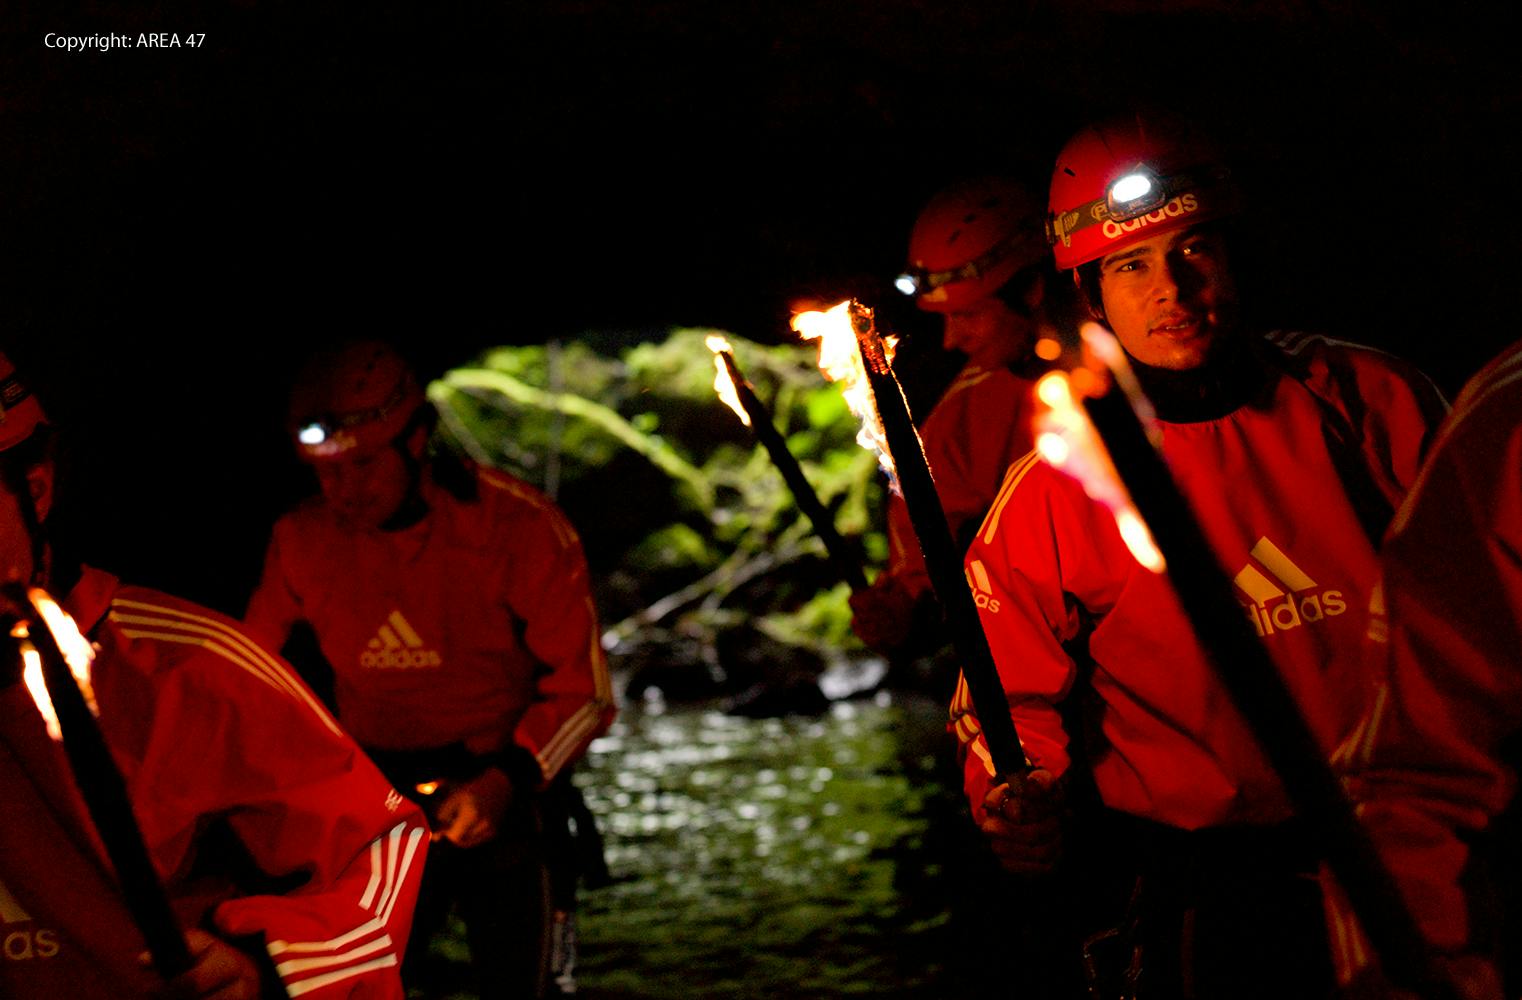 Höhlen-Abenteuer | Exkursion & Eintritt in die Water Area